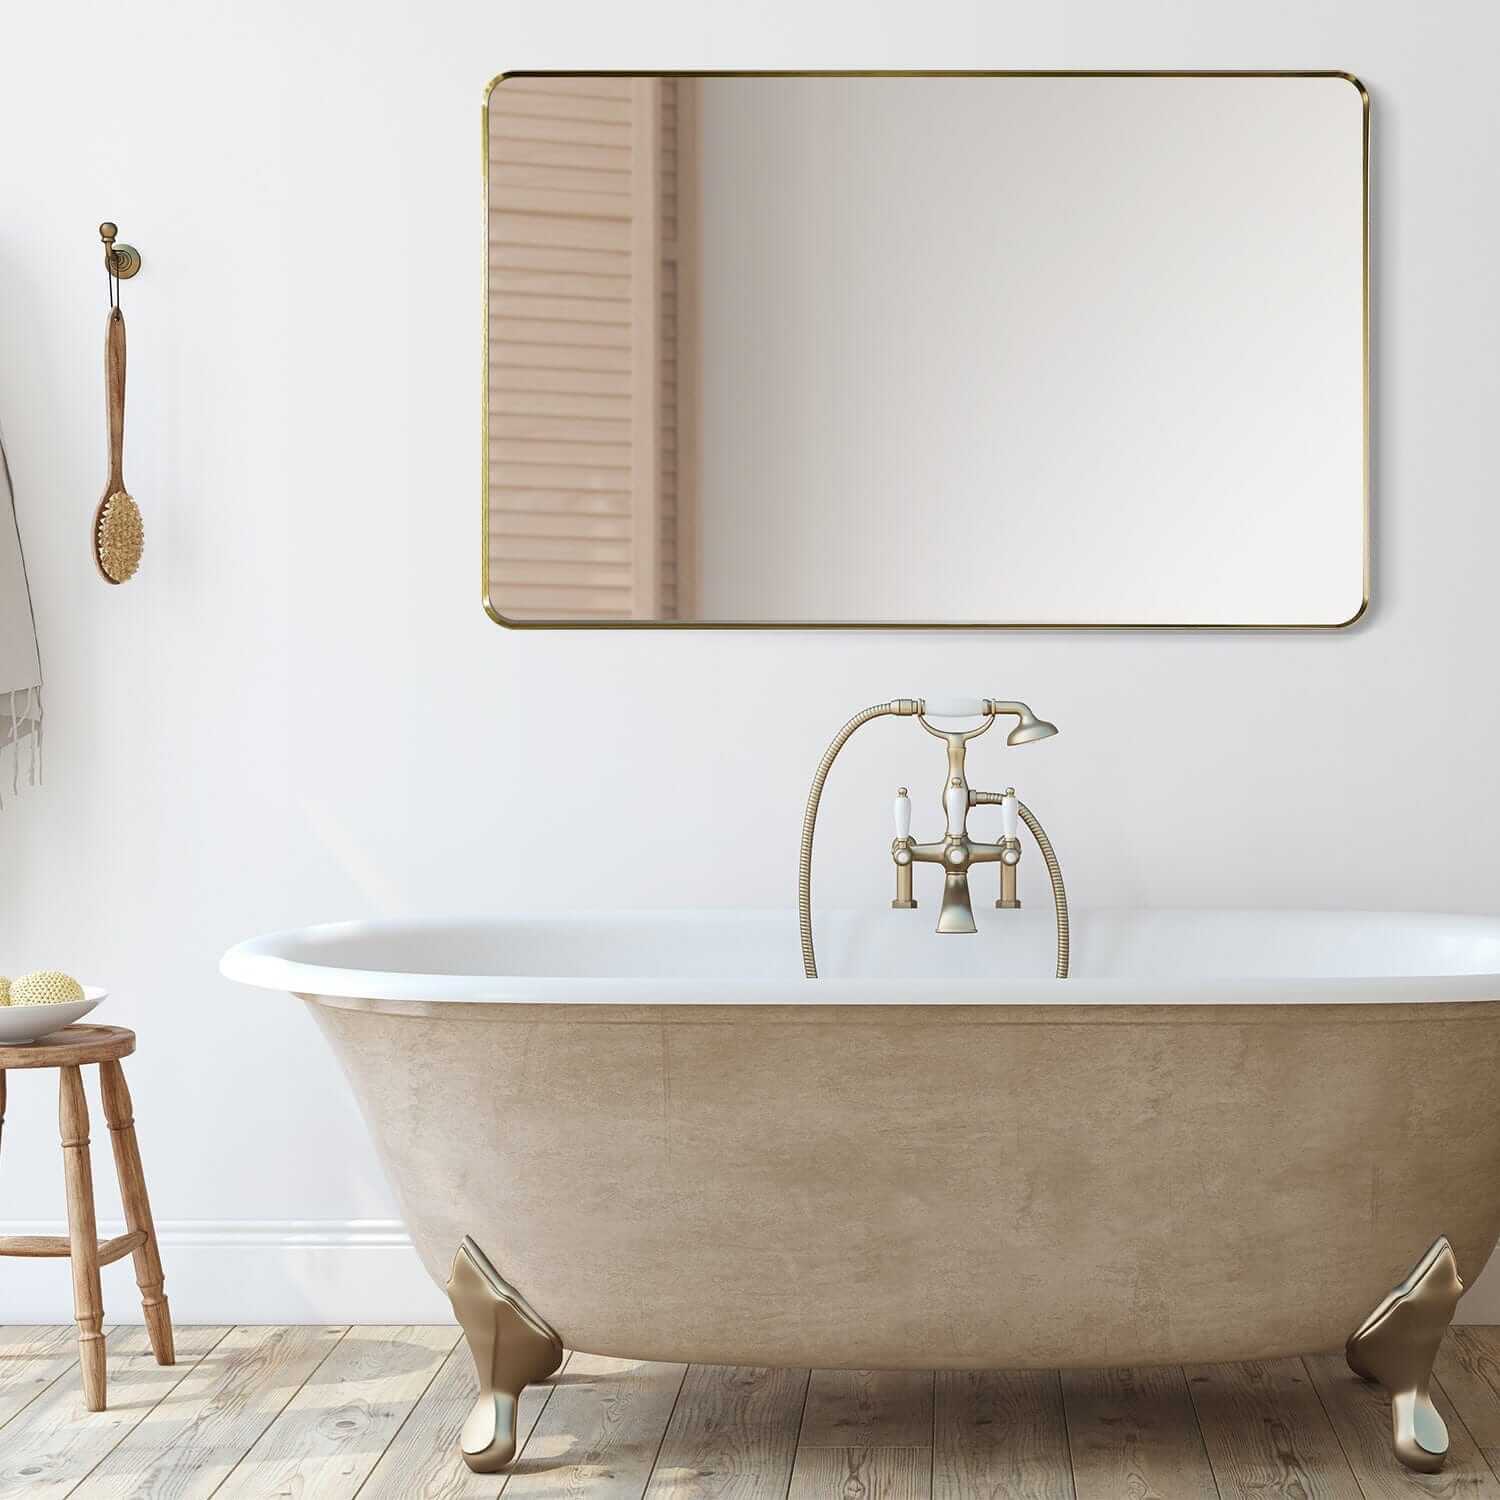 Bathroom Mirror - Altair Nettuno 48W x 30H - 754048-MIR-GF